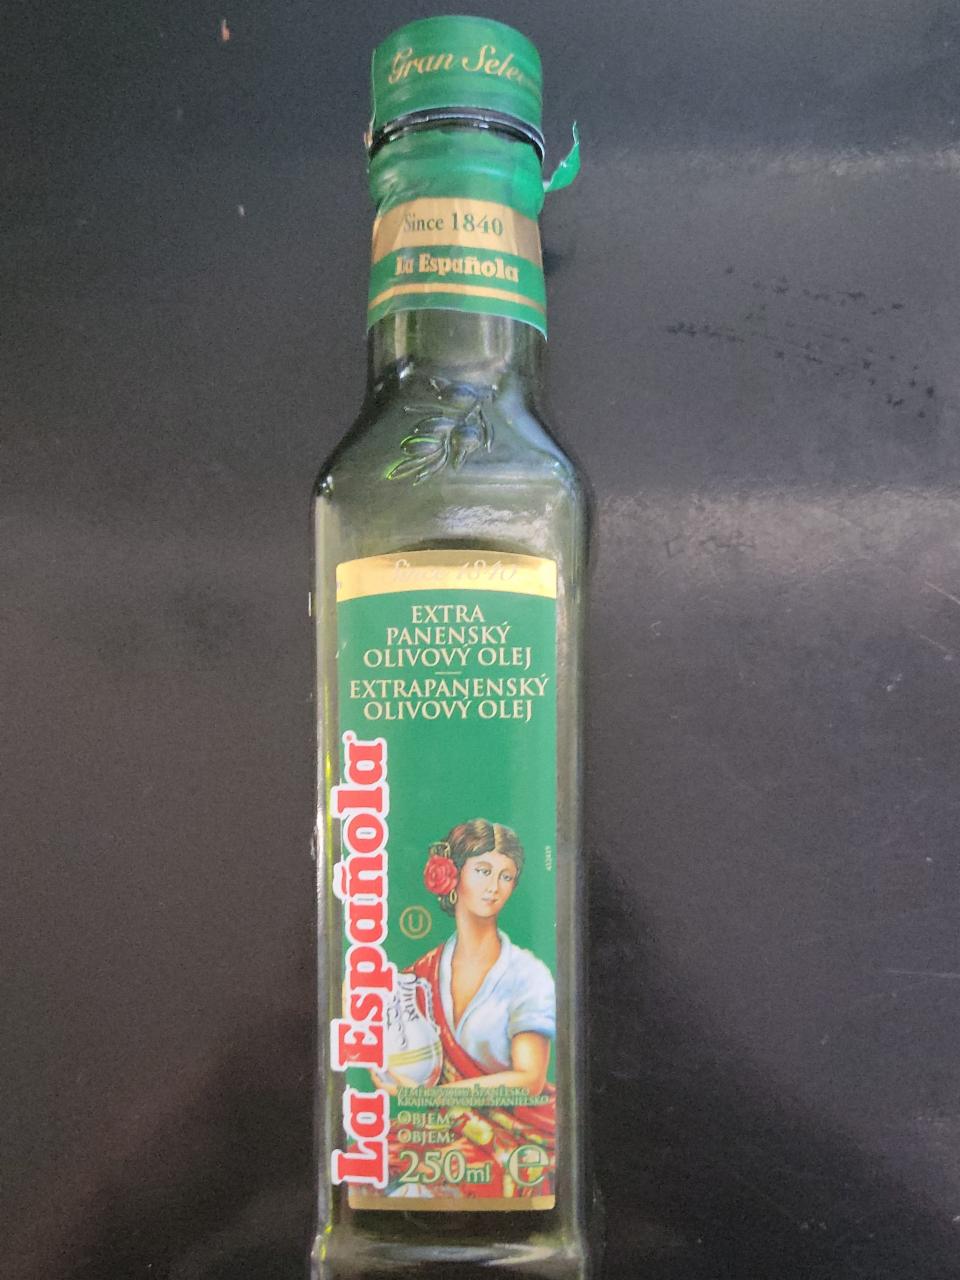 Fotografie - Extra panenský olivový olej La Espaňola